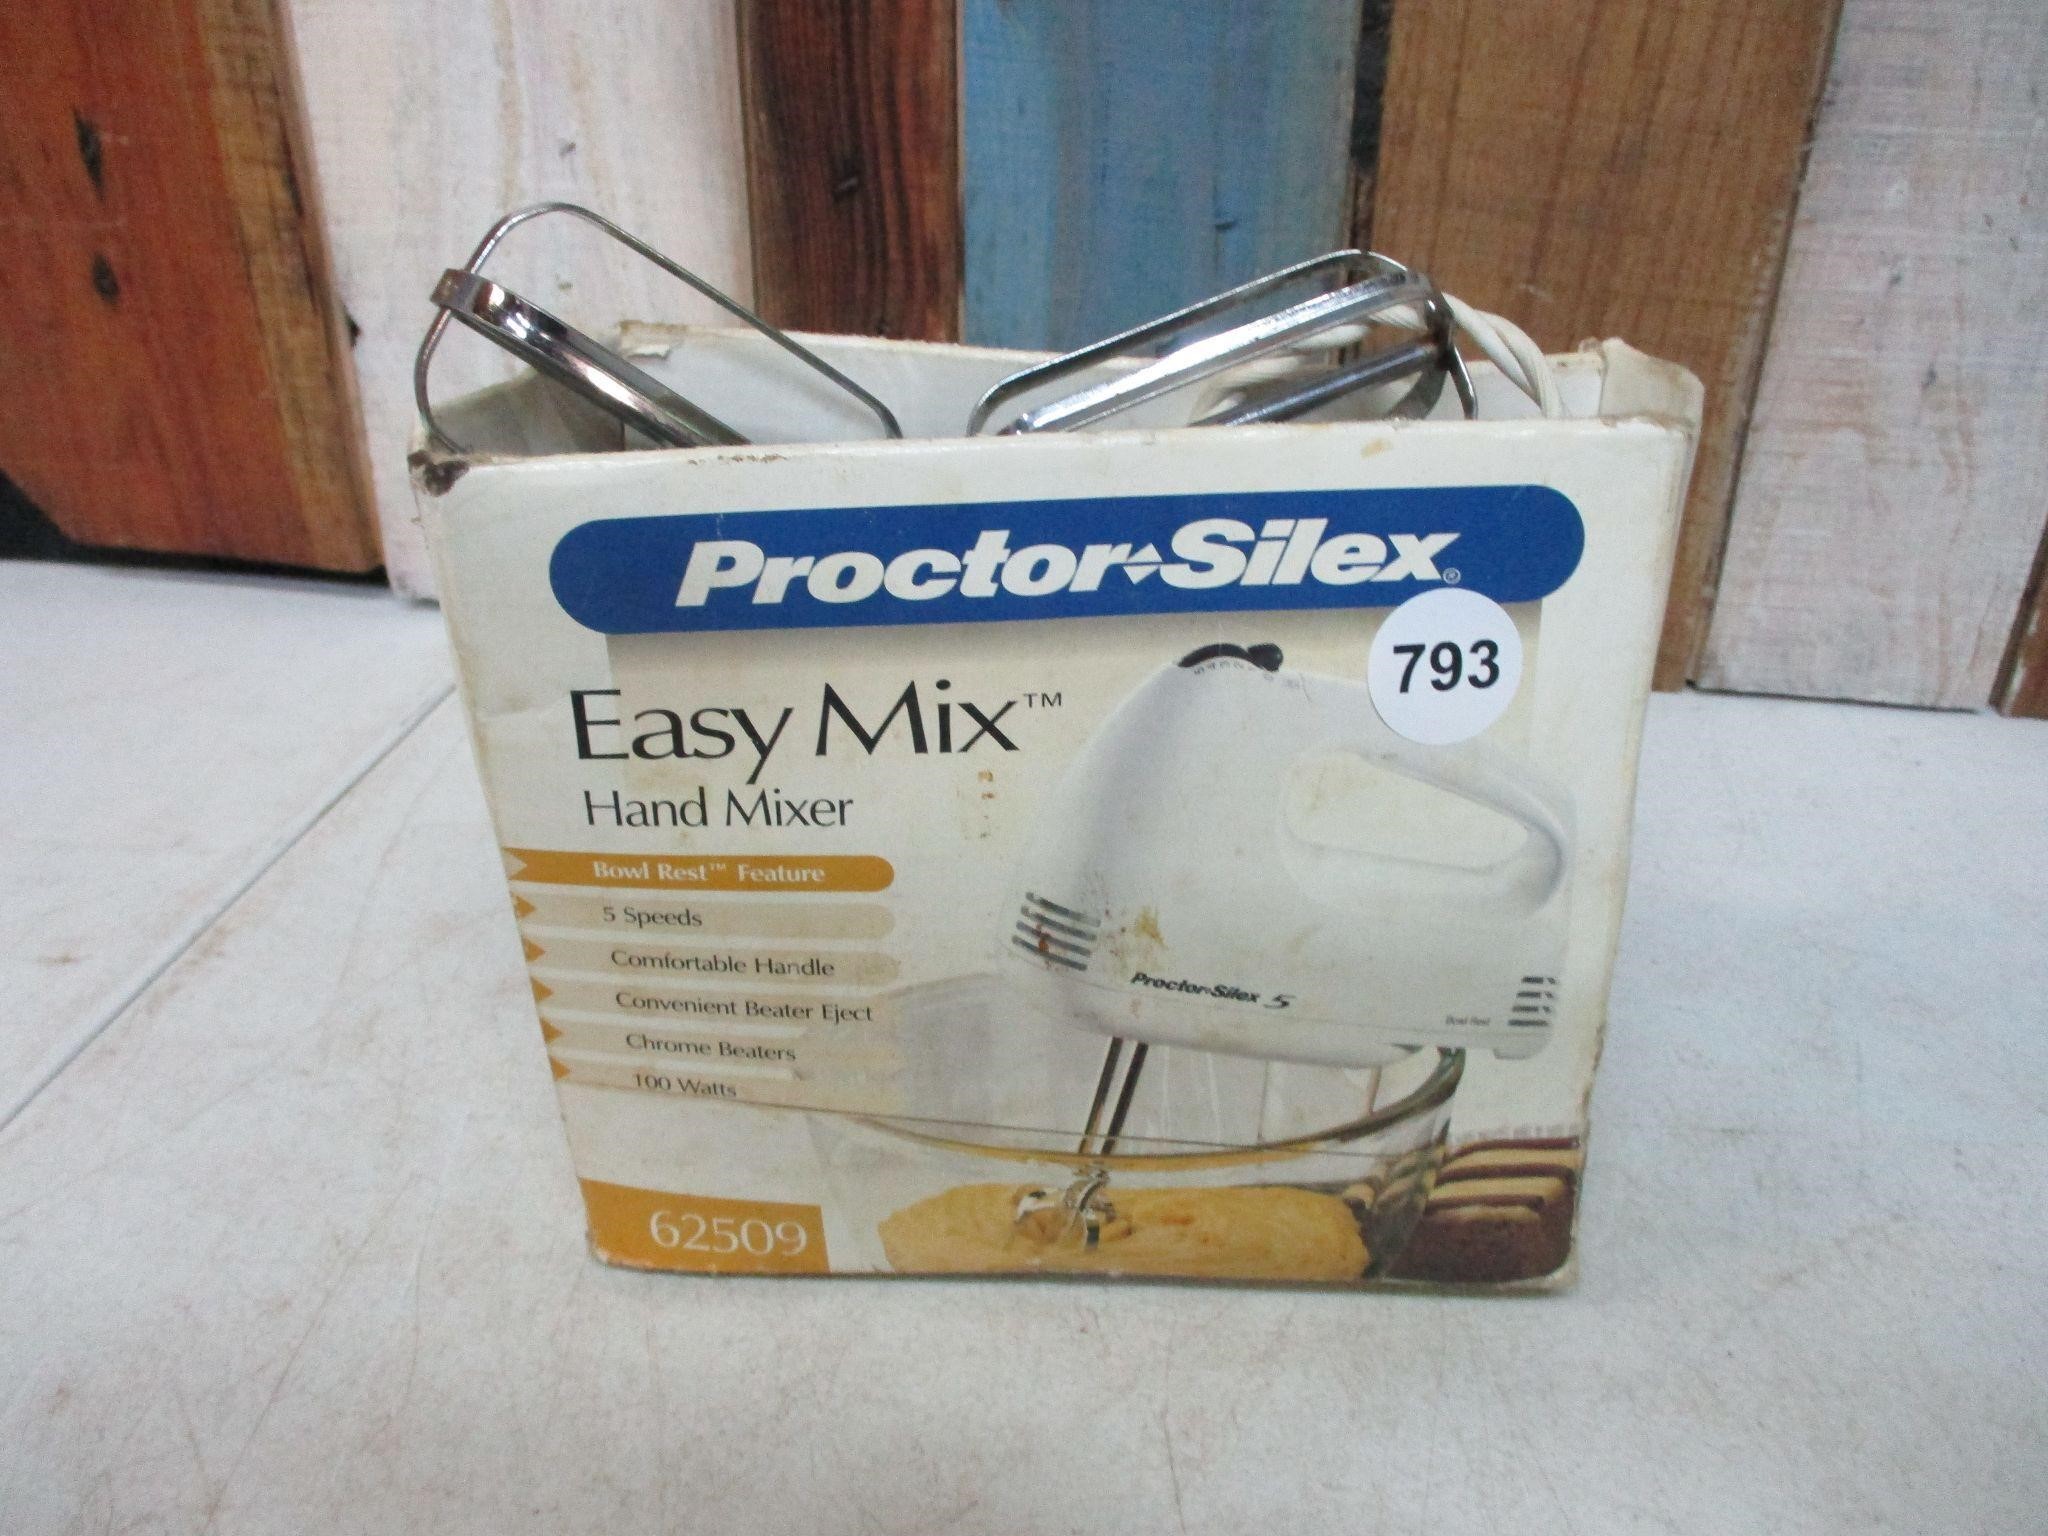 Easy Mix Hand Mixer